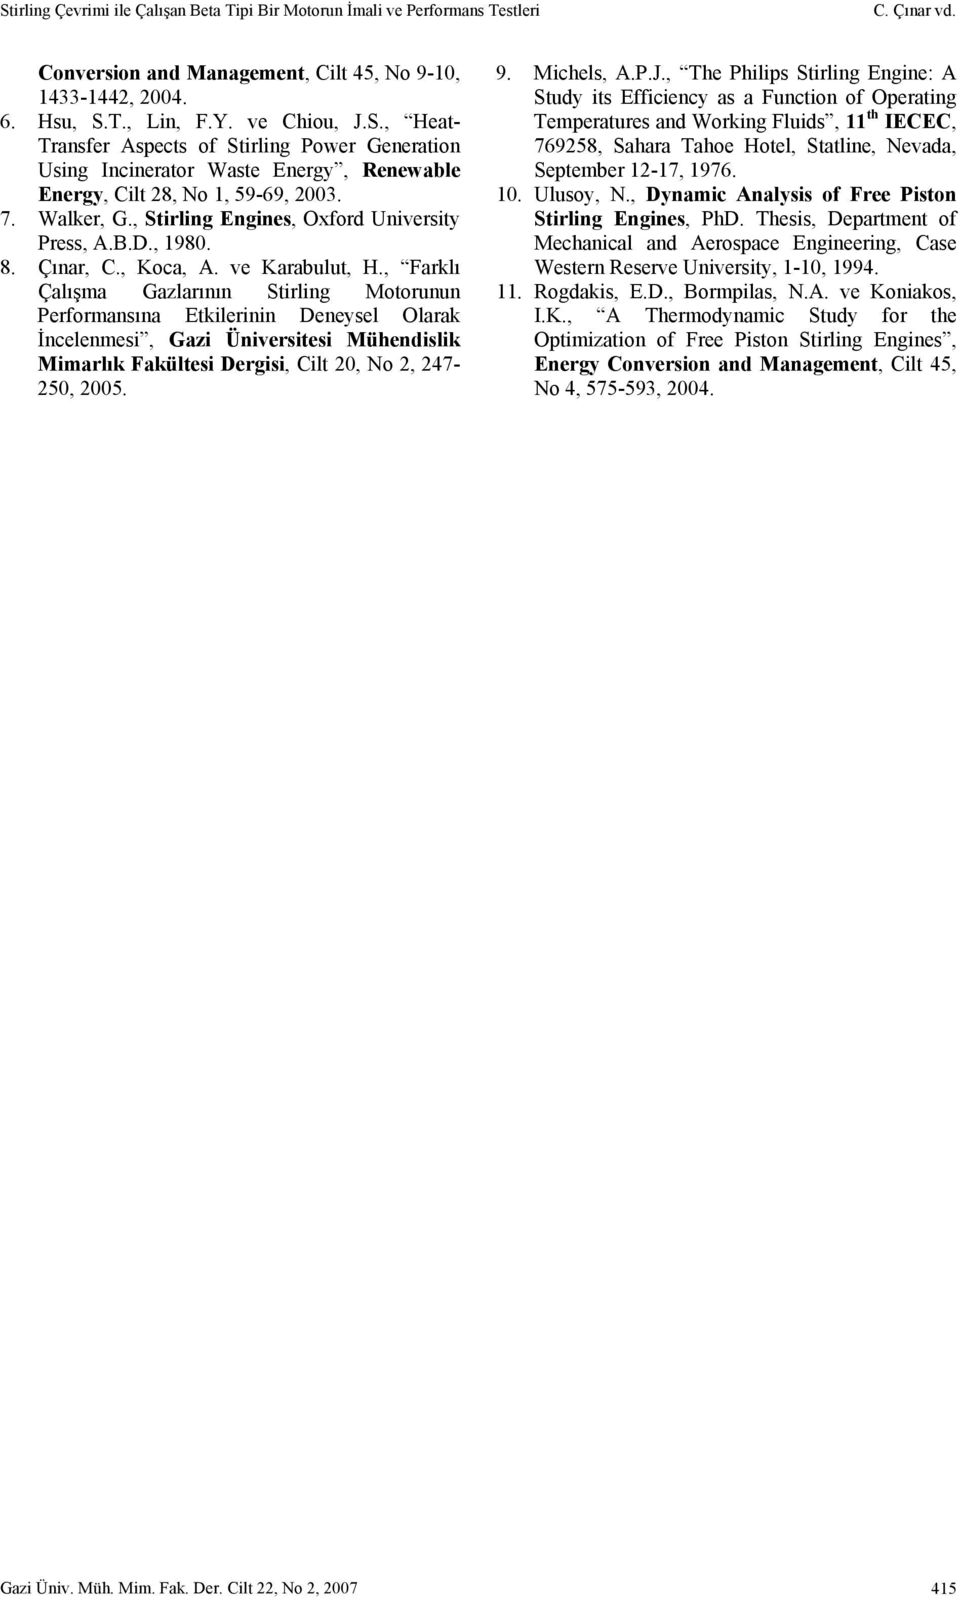 , Farklı Çalışma Gazlarının Stirling Motorunun Performansına Etkilerinin Deneysel Olarak İncelenmesi, Gazi Üniversitesi Mühendislik Mimarlık Fakültesi Dergisi, Cilt 20, No 2, 247-250, 2005. 9.